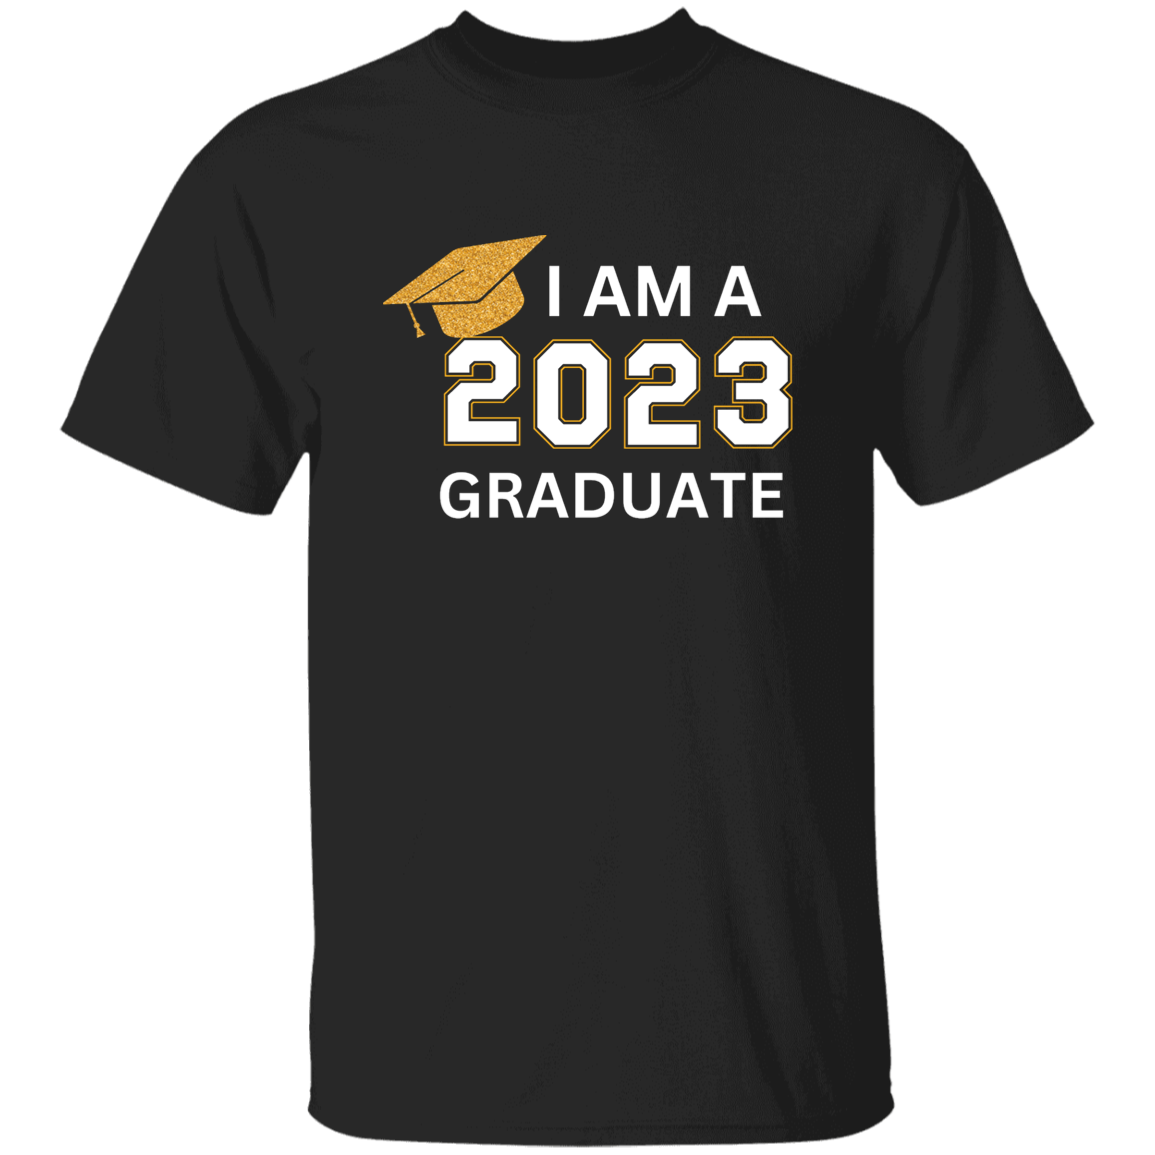 Graduation | Blk T-Shirt | I am a 2023 Graduate | Black Tee